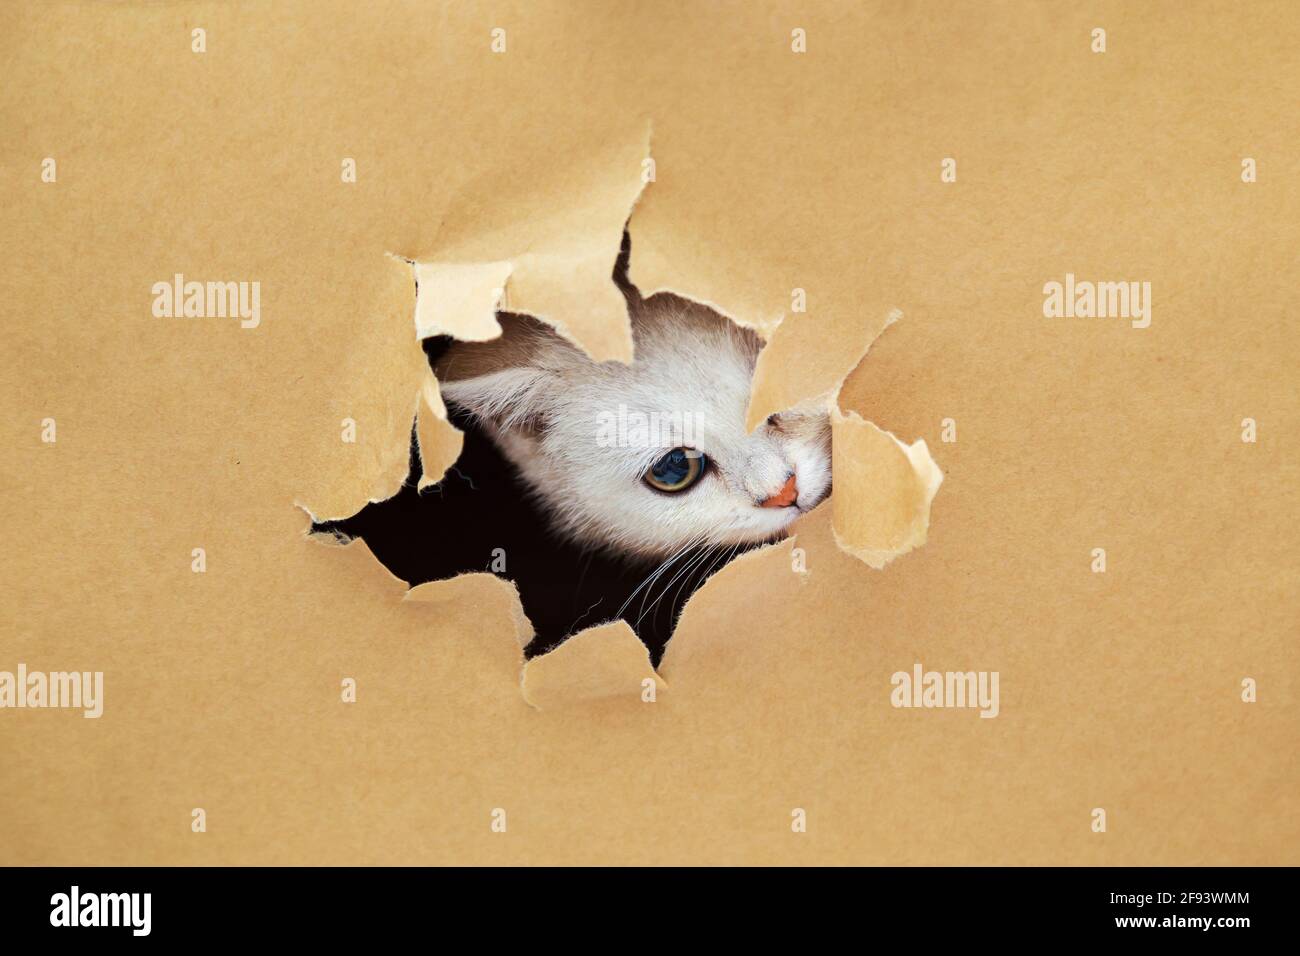 Kleines weißes britisches Kätzchen schaut durch ein Loch in Bastelpapier. Witziges, neugieriges Haustier. Speicherplatz kopieren. Stockfoto